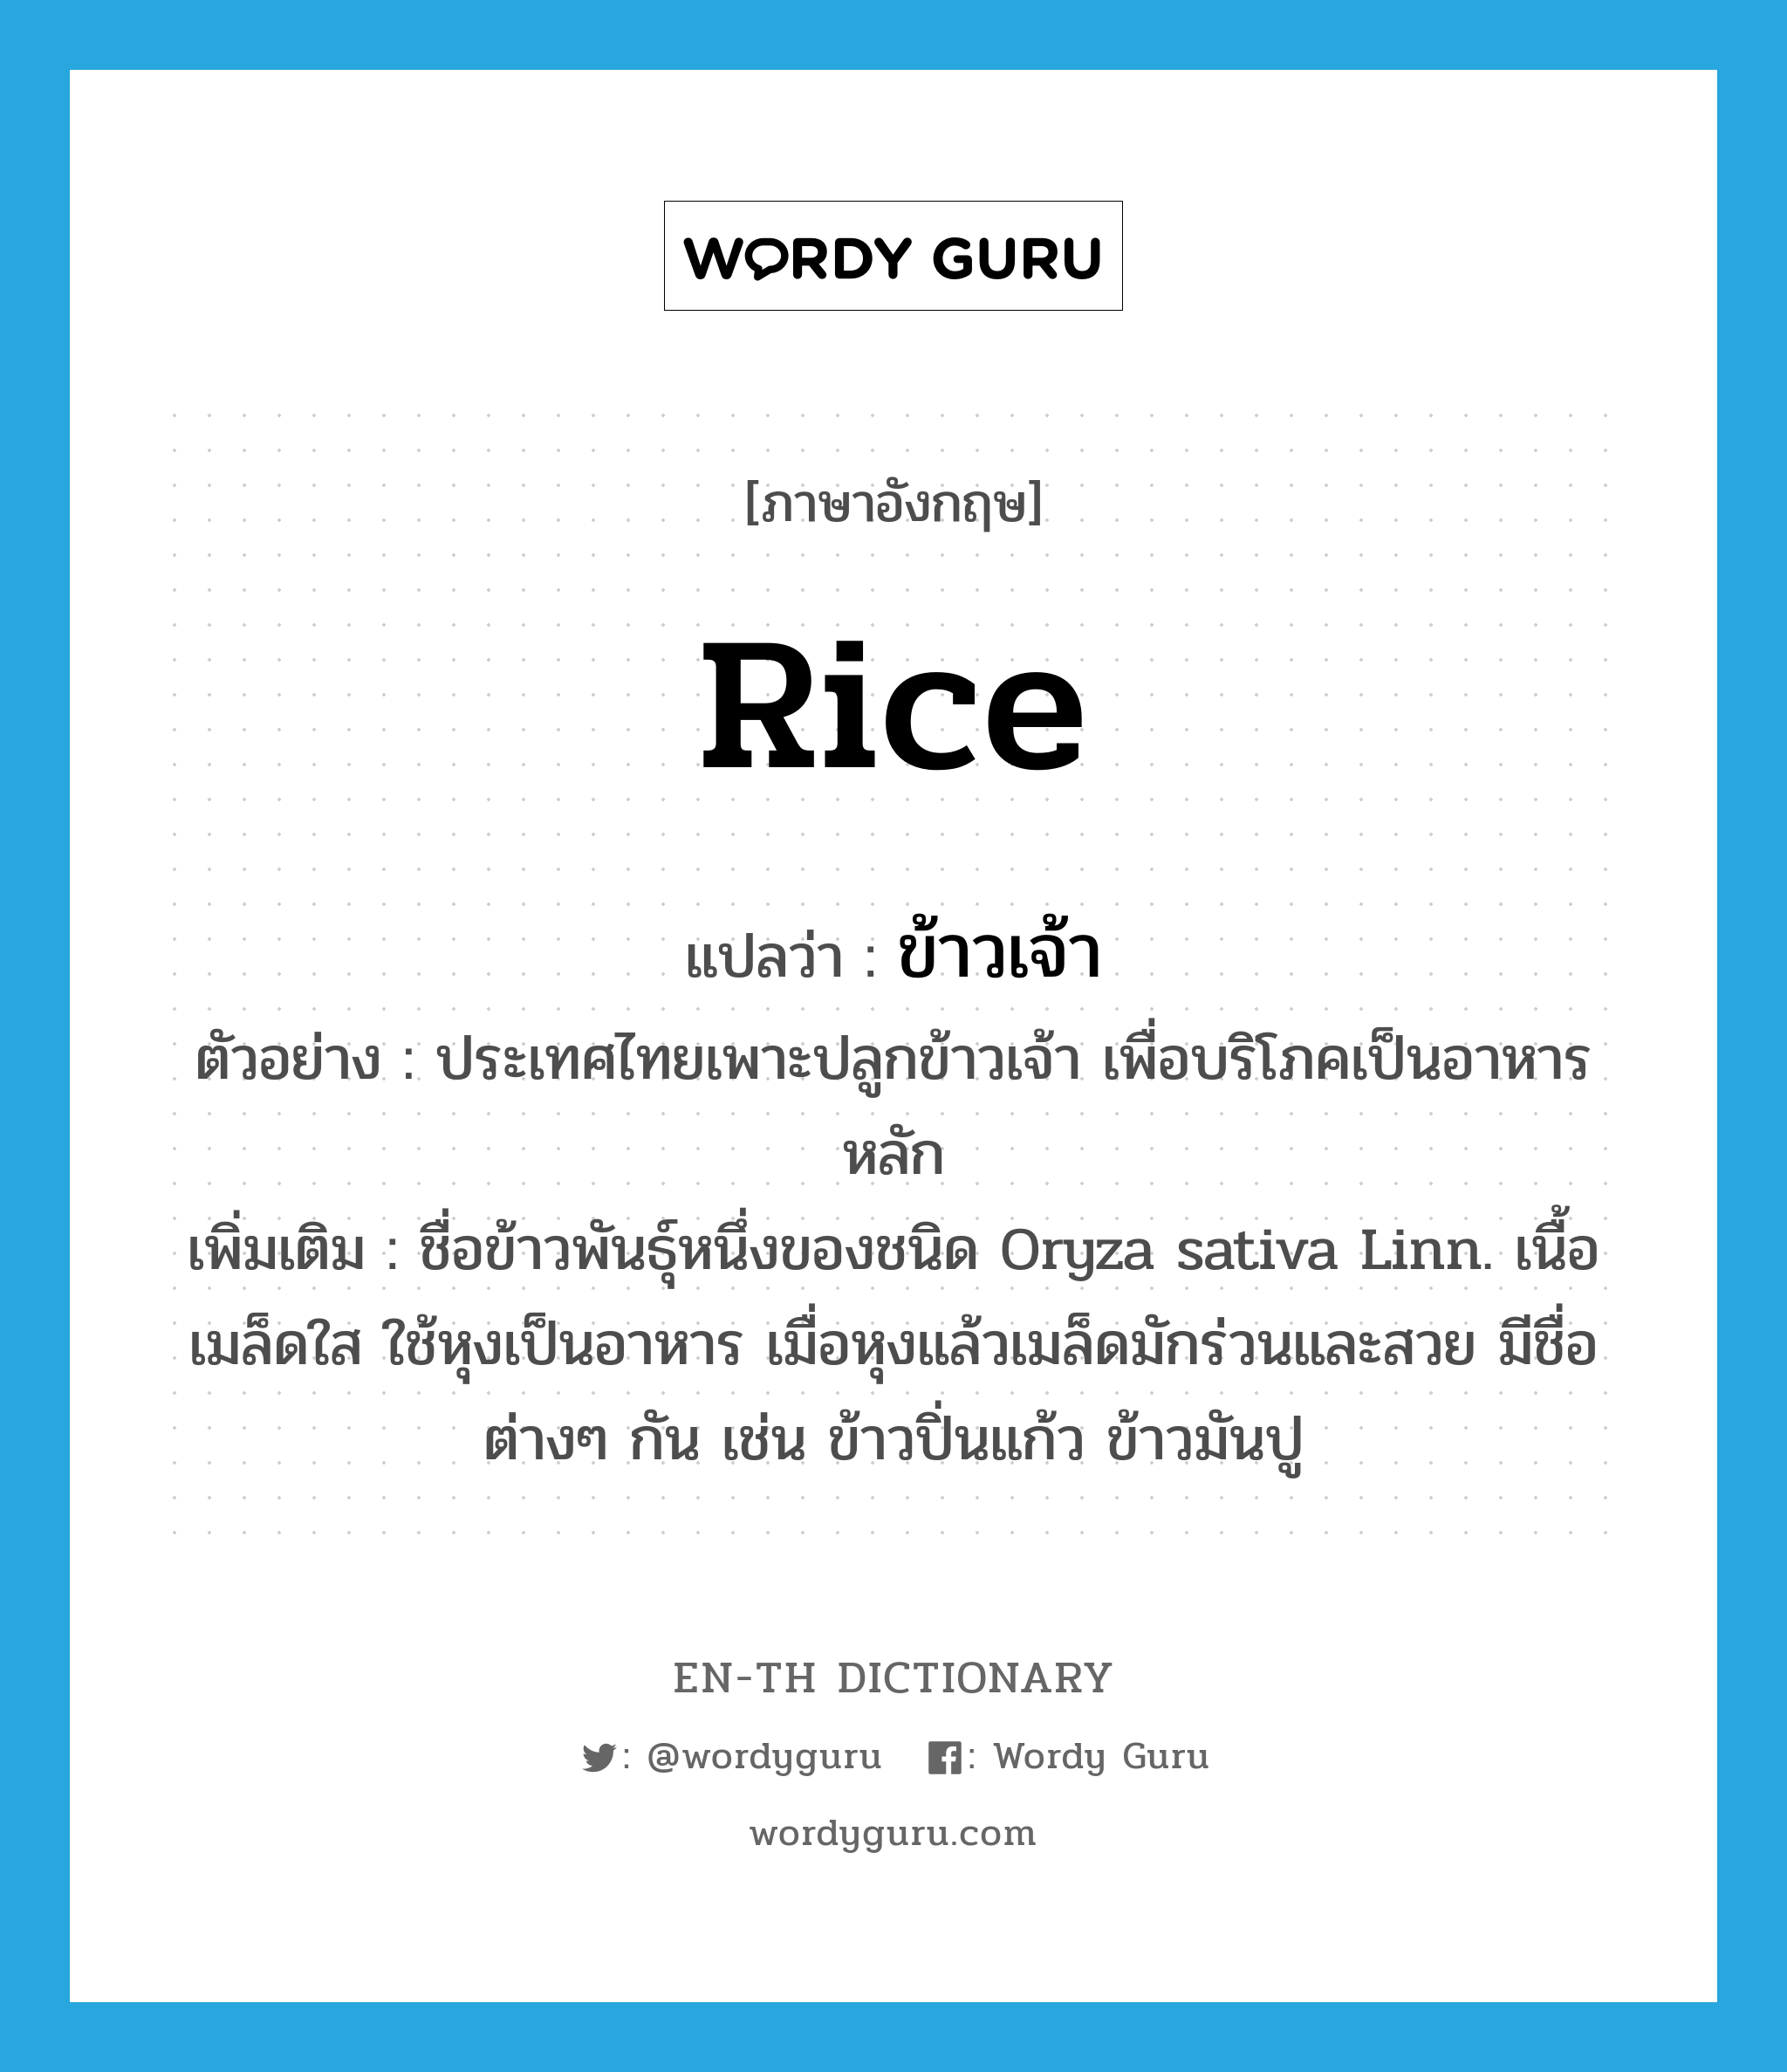 rice แปลว่า?, คำศัพท์ภาษาอังกฤษ rice แปลว่า ข้าวเจ้า ประเภท N ตัวอย่าง ประเทศไทยเพาะปลูกข้าวเจ้า เพื่อบริโภคเป็นอาหารหลัก เพิ่มเติม ชื่อข้าวพันธุ์หนึ่งของชนิด Oryza sativa Linn. เนื้อเมล็ดใส ใช้หุงเป็นอาหาร เมื่อหุงแล้วเมล็ดมักร่วนและสวย มีชื่อต่างๆ กัน เช่น ข้าวปิ่นแก้ว ข้าวมันปู หมวด N